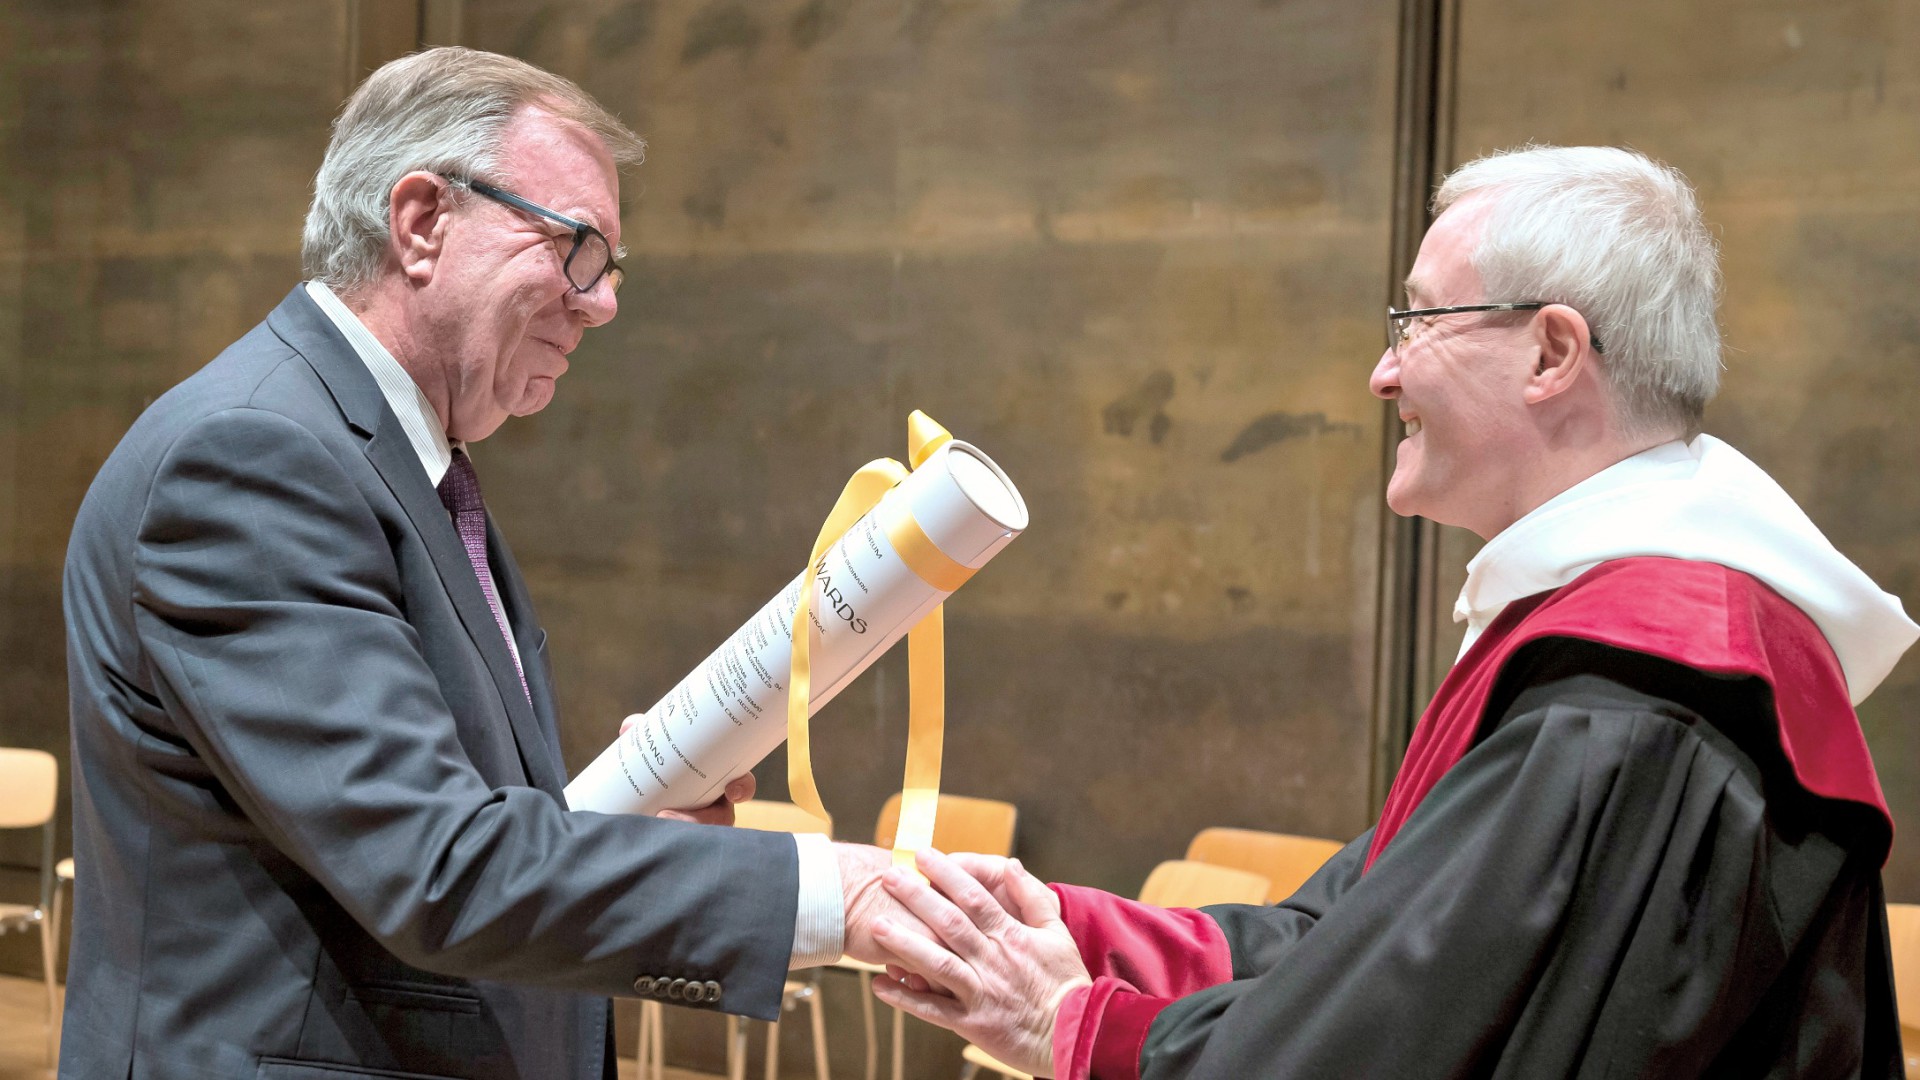 Denis Edwards reçoit son doctorat Honoris Causa (Photo: Université de Fribourg / Charly Rappo)